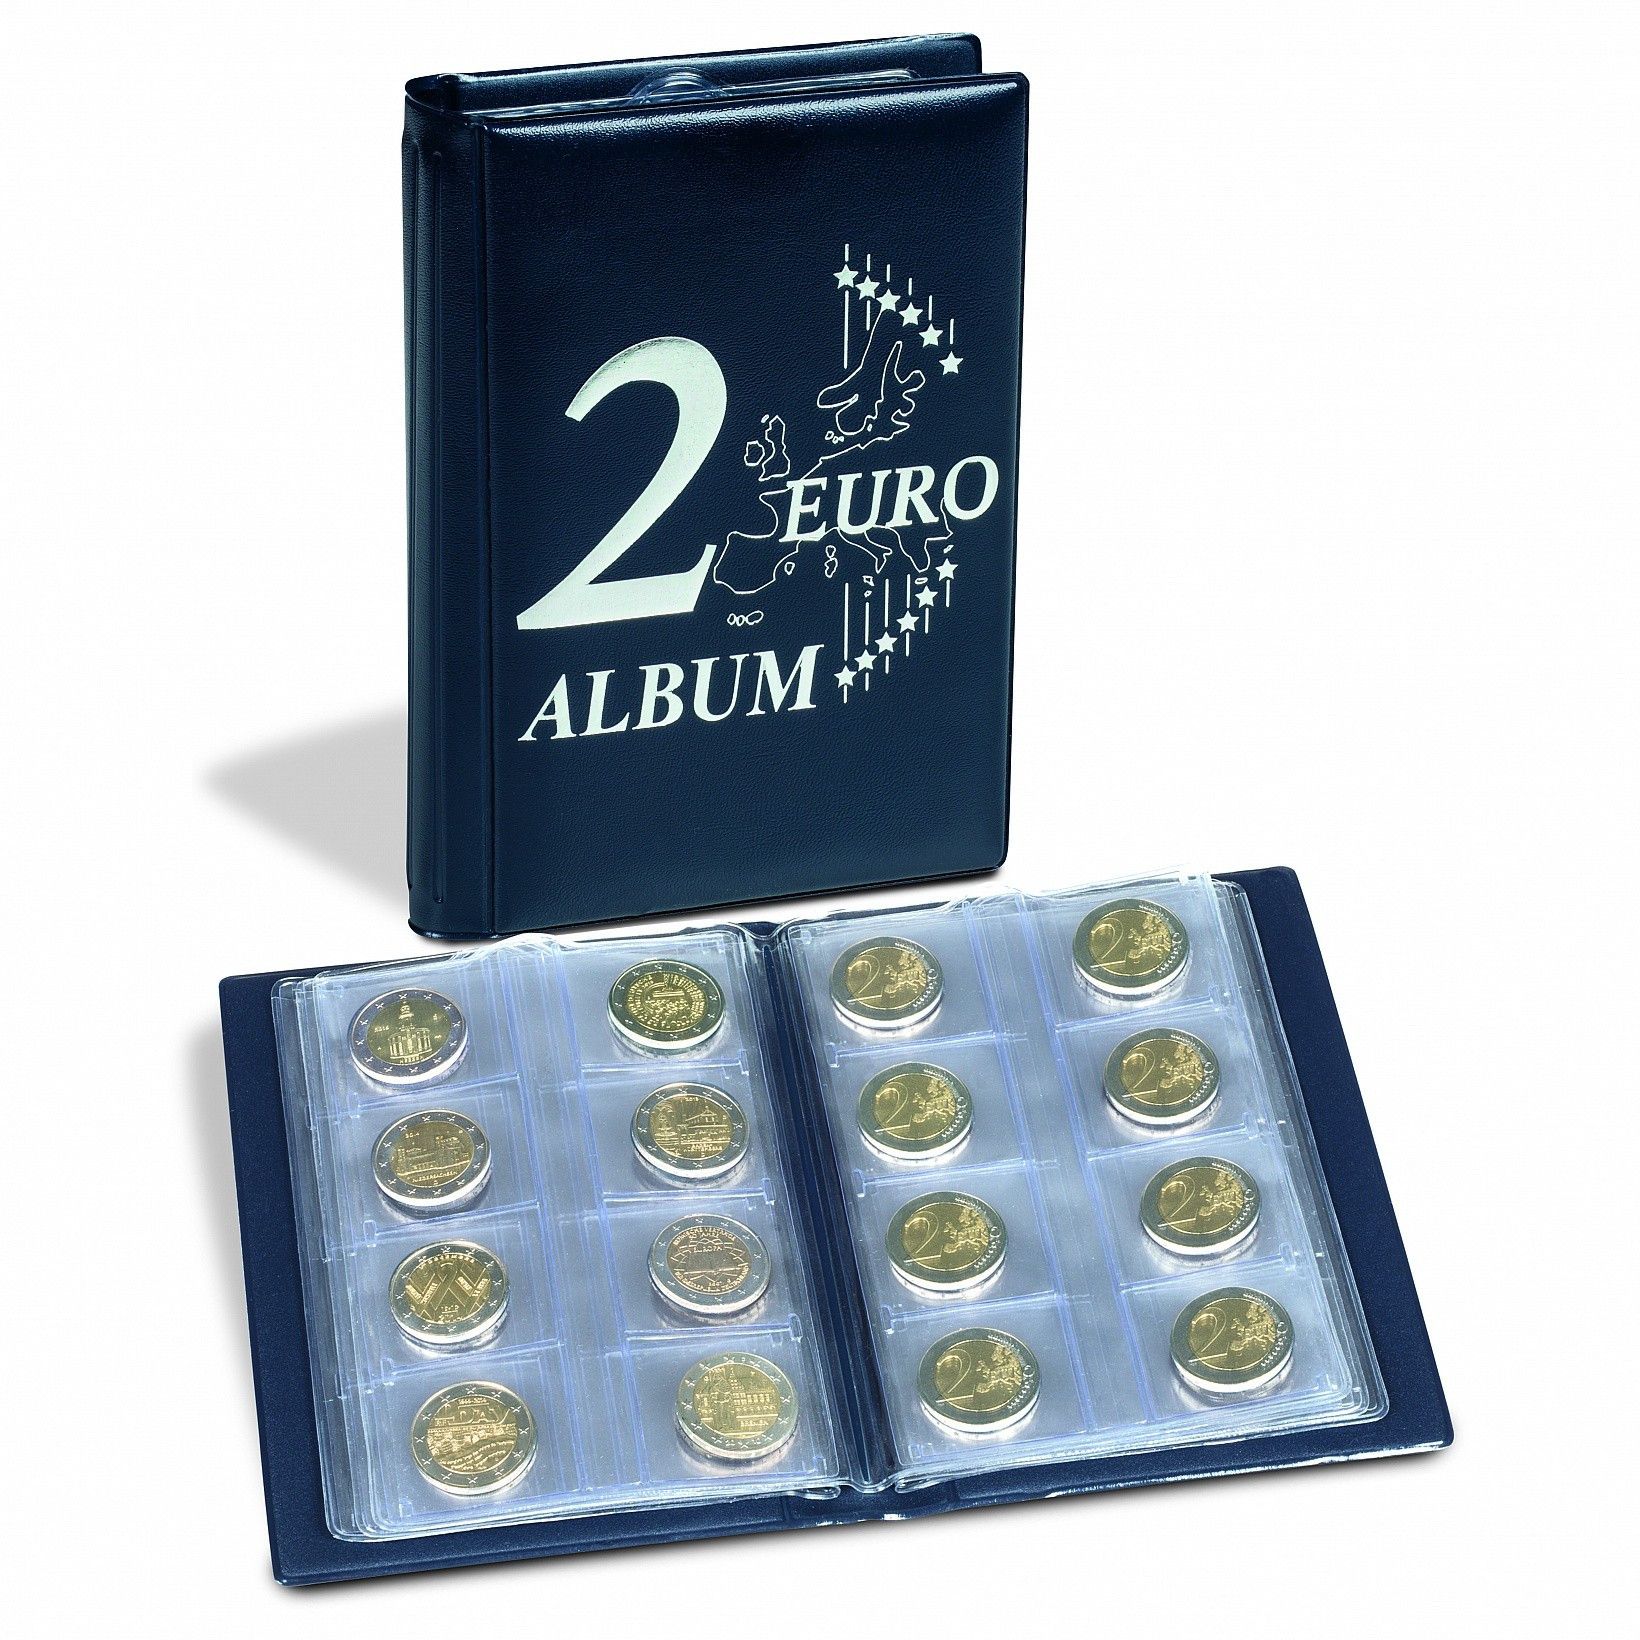 Album de poche spécial monnaies 2 euros commémoratives